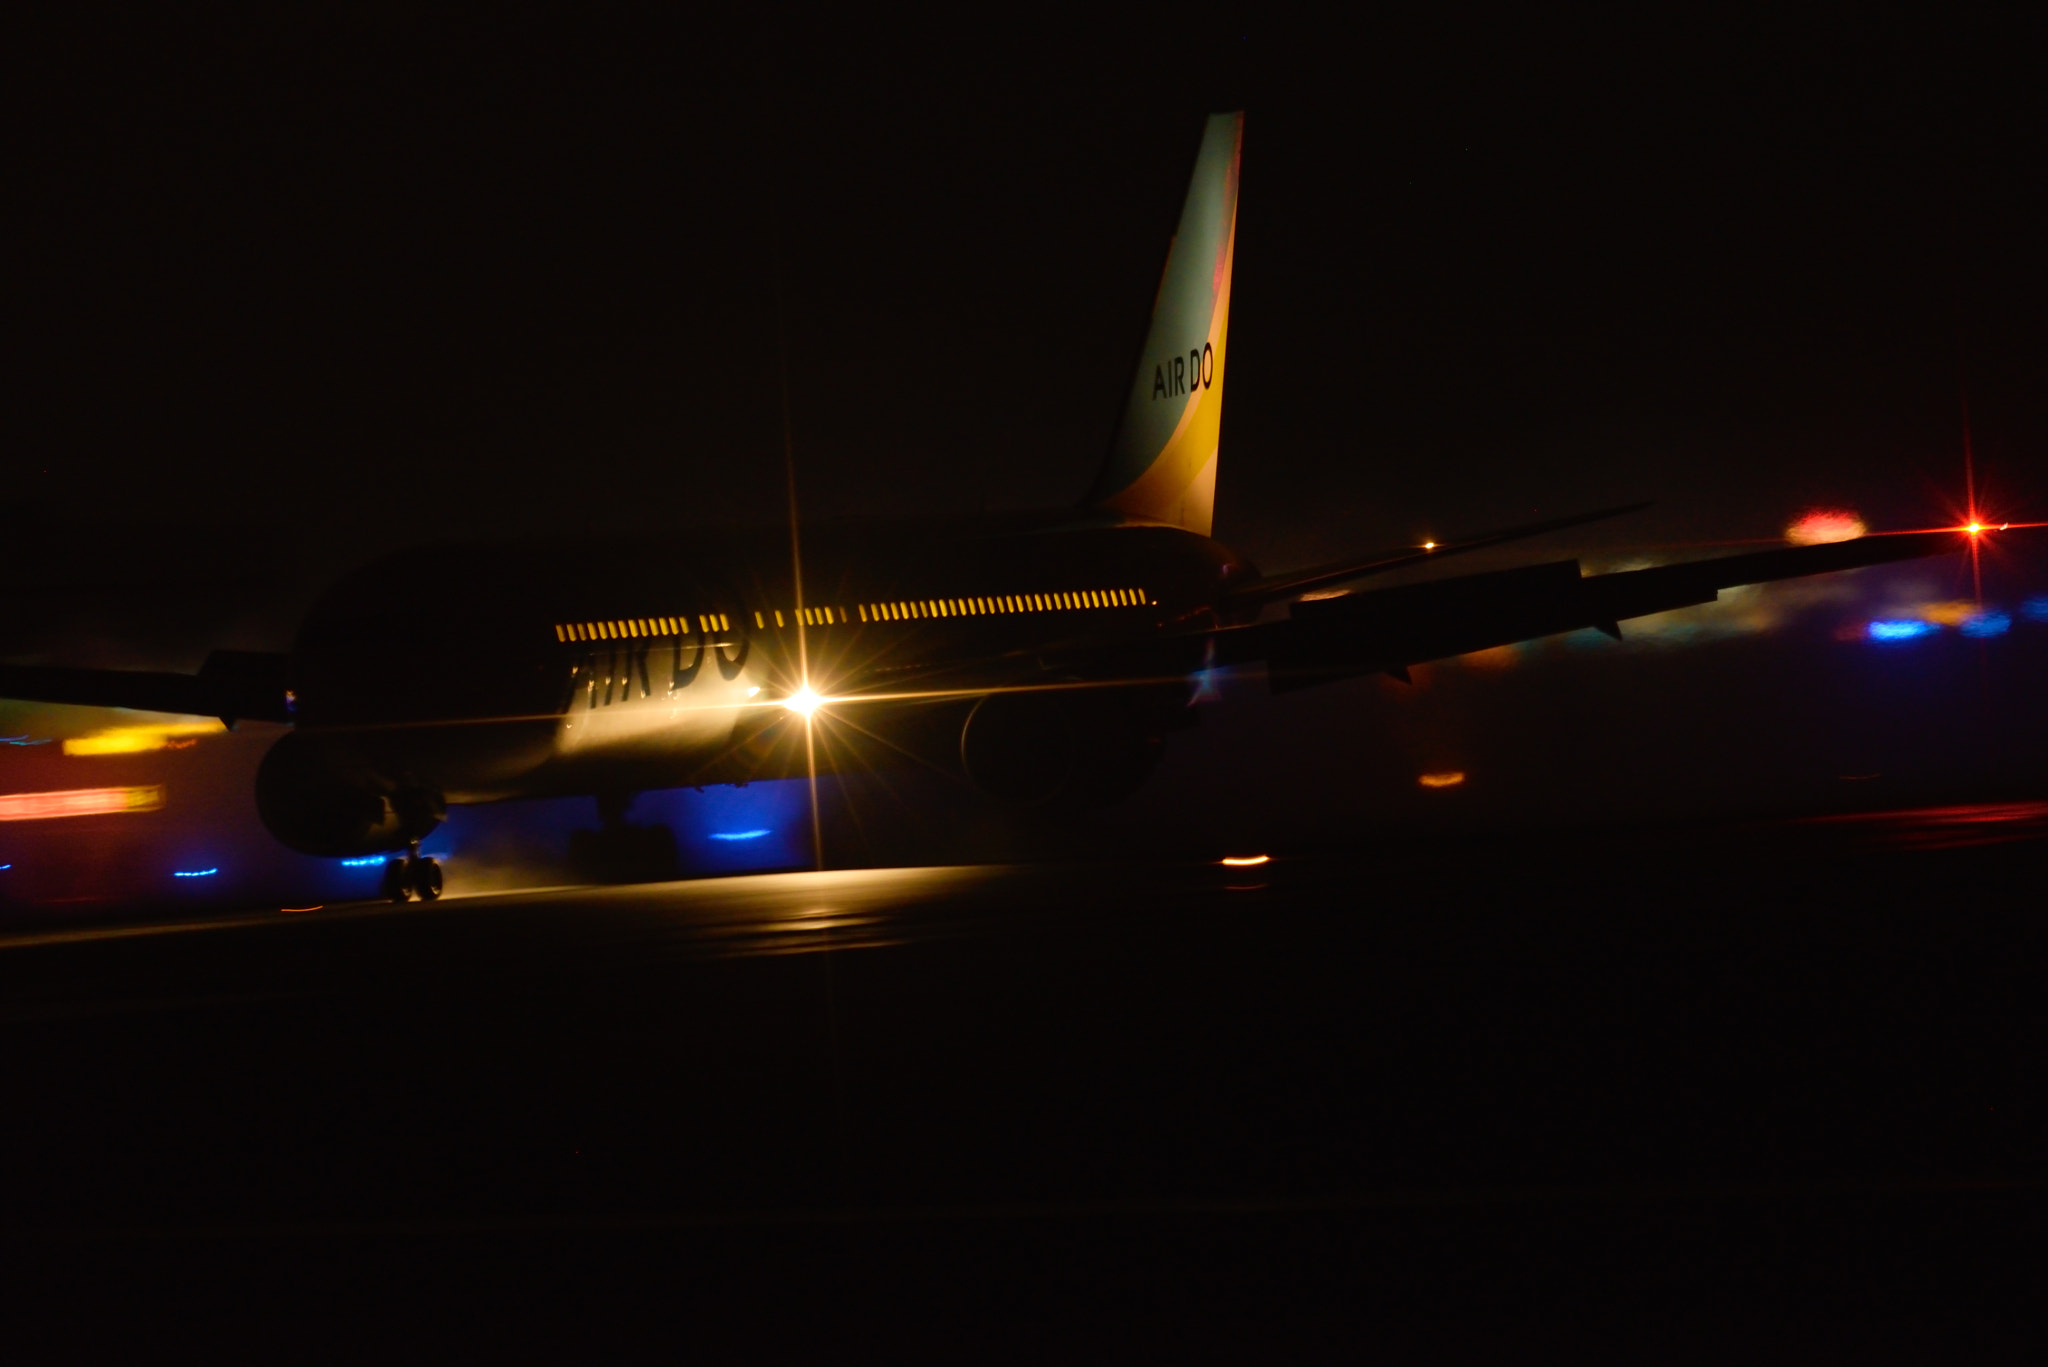 AF-I Nikkor 500mm f/4D IF-ED sample photo. Night flight photography